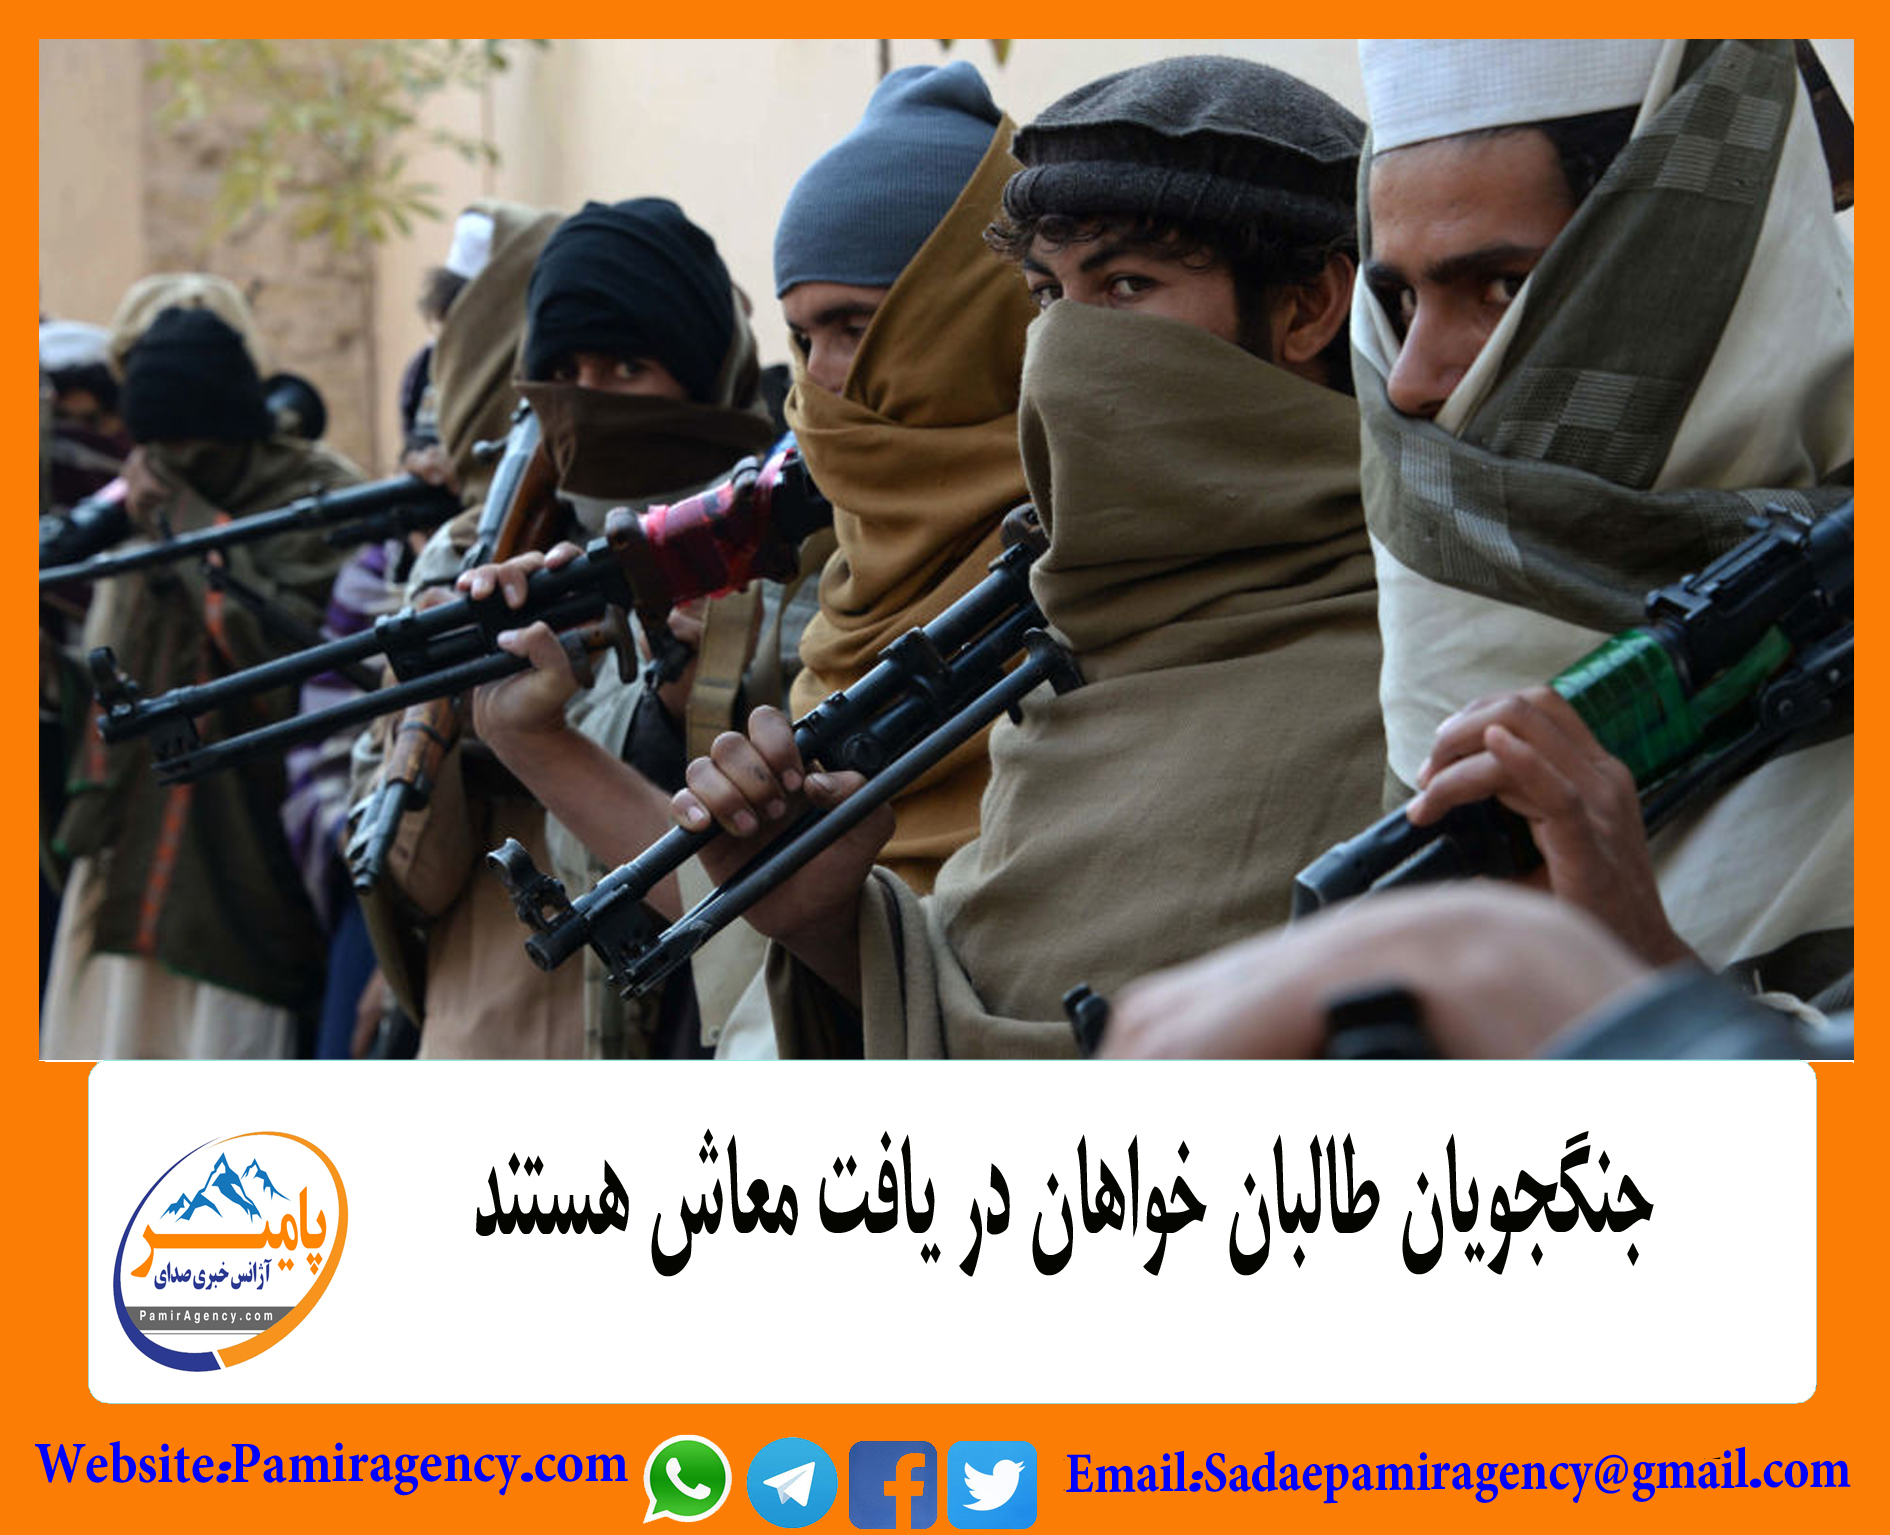 جنگجویان طالبان خواهان در یافت معاش هستند